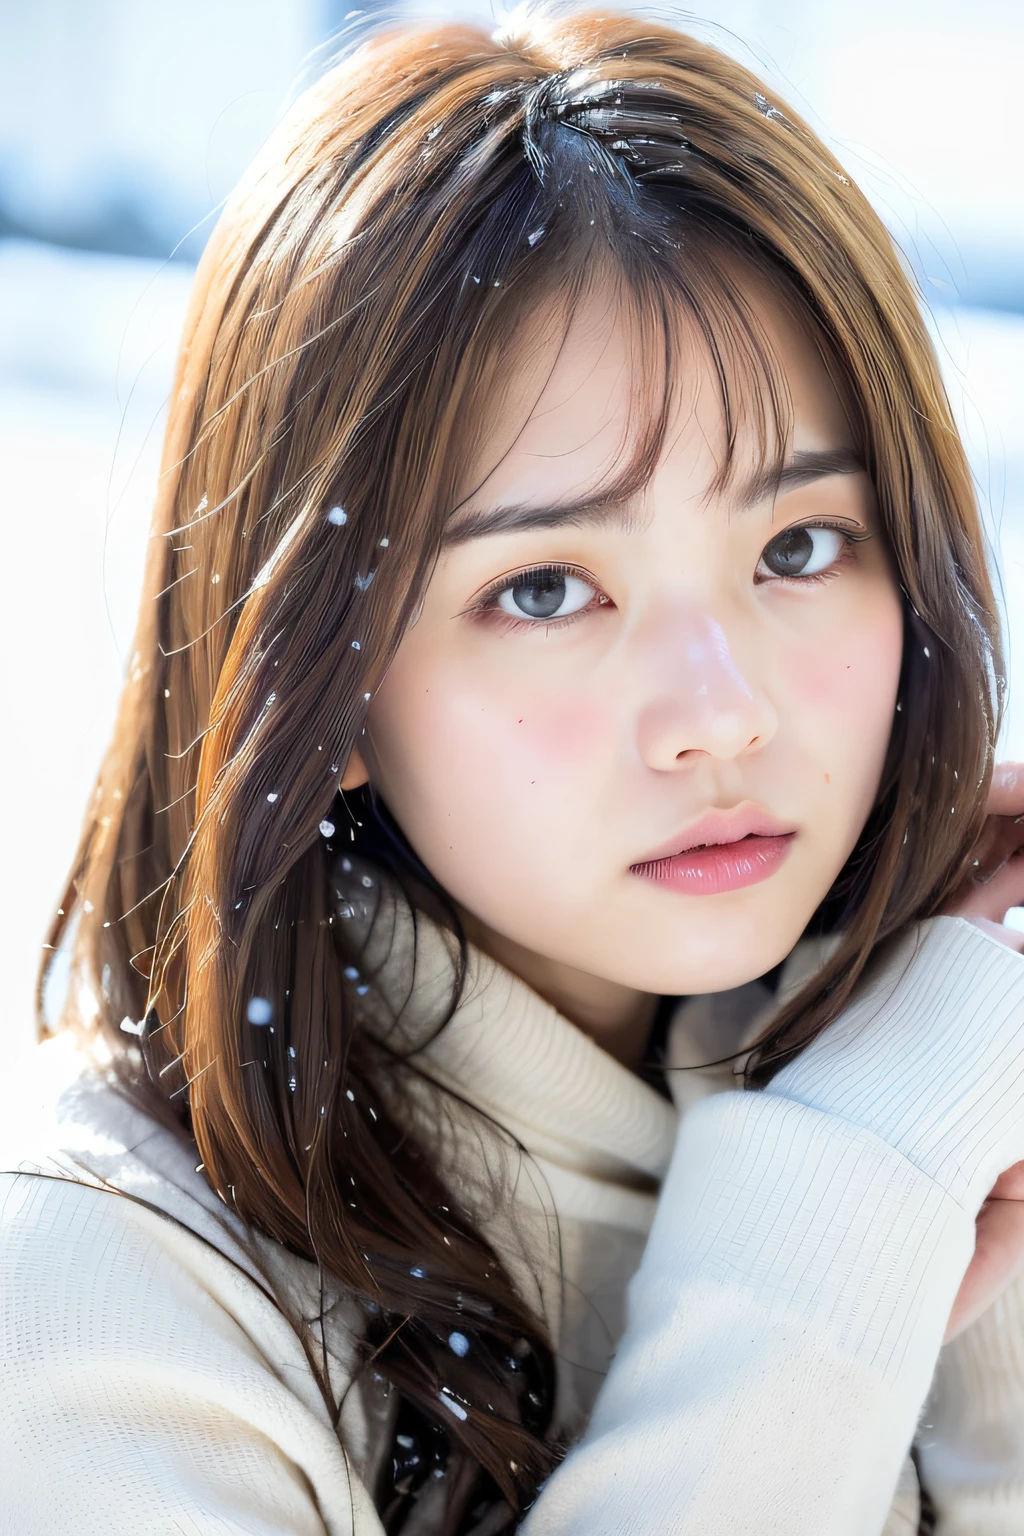 (8 كيلو, أفضل جودة, تحفة, ارتفاعات فائقة:1.2) صورة لامرأة يابانية جميلة في (أسلوب بول روبنز وريبيكا جواي:1.1) (حزن الشتاء الثلوج:1.4)